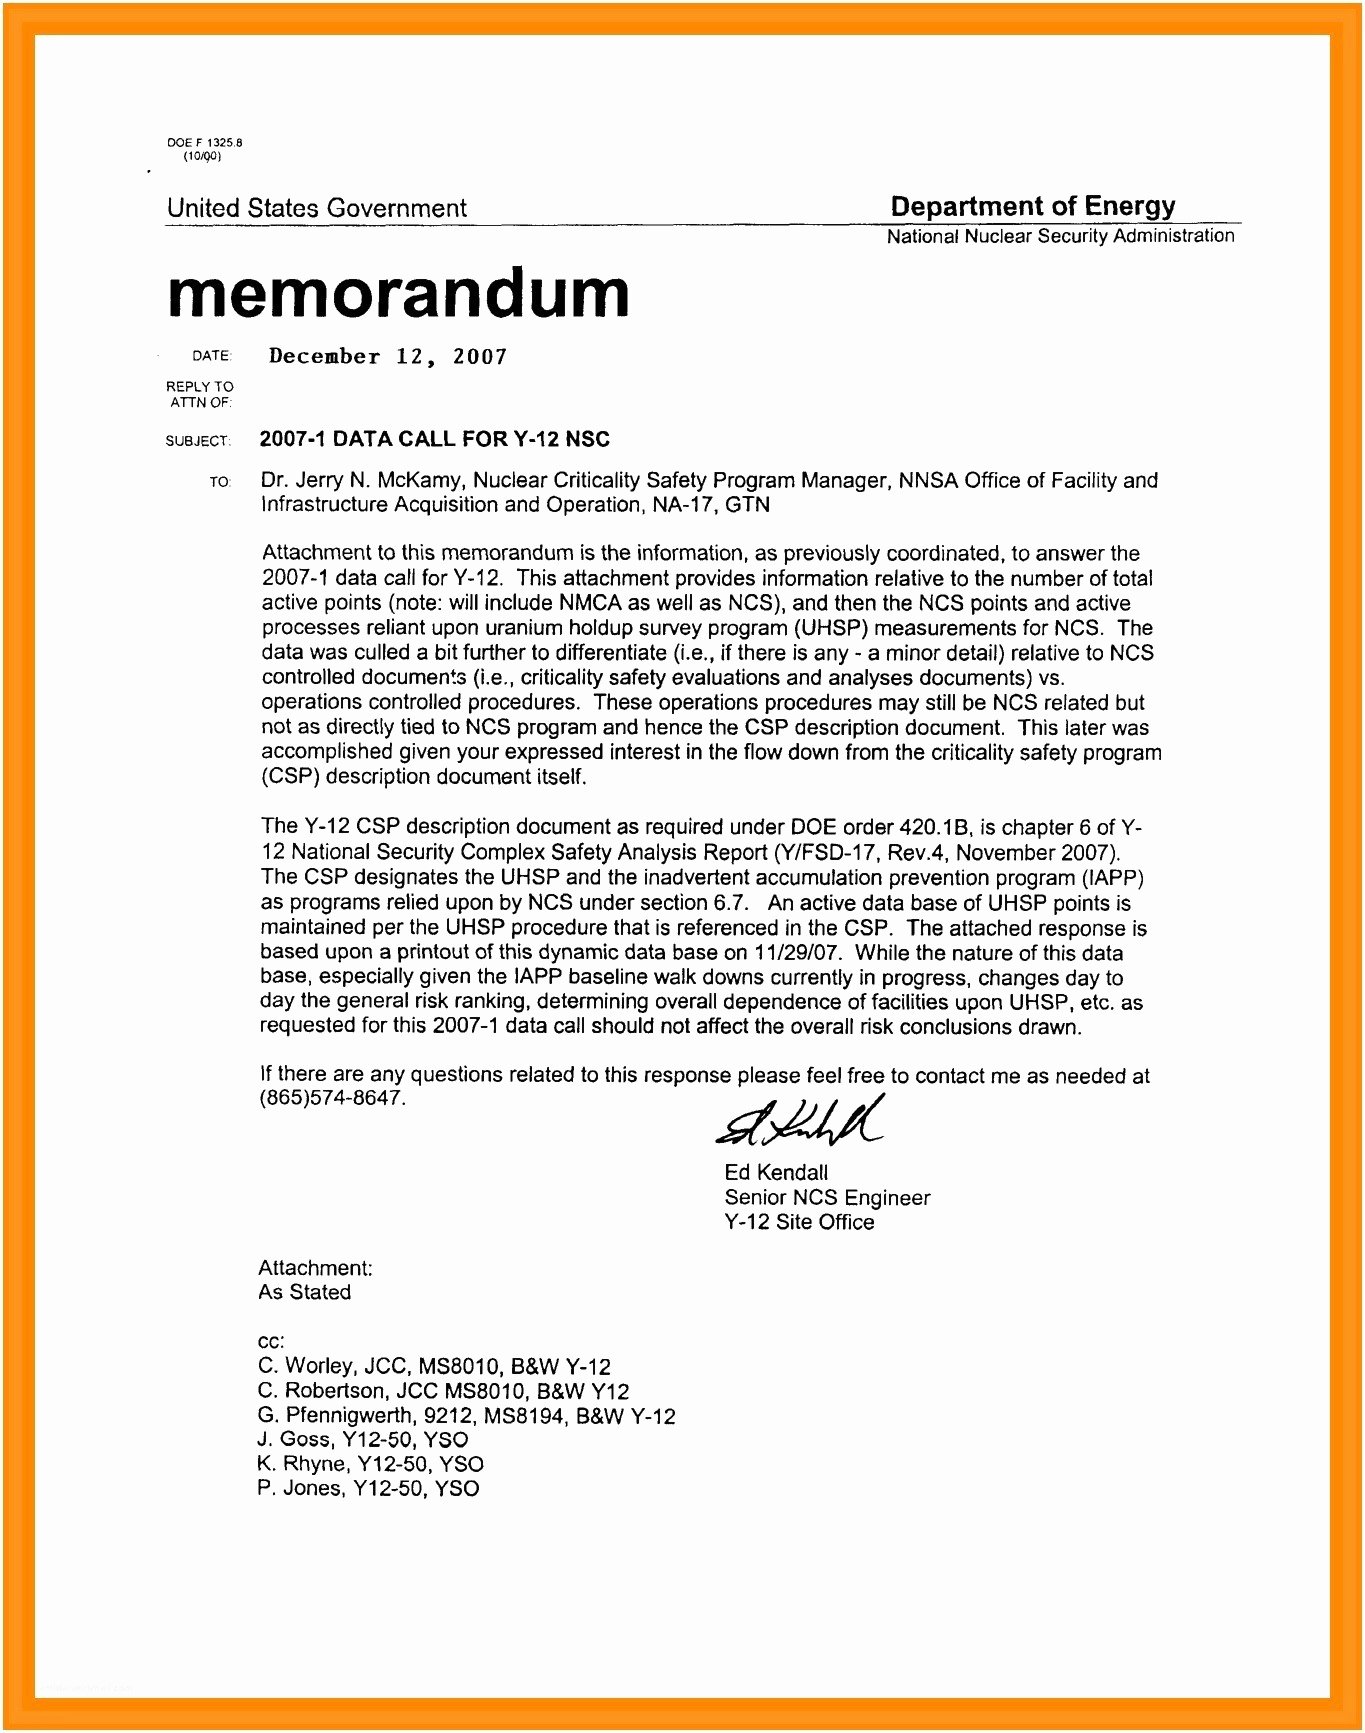 Business Letter format attachment Unique Letter format Cc Business attachment and New formal with